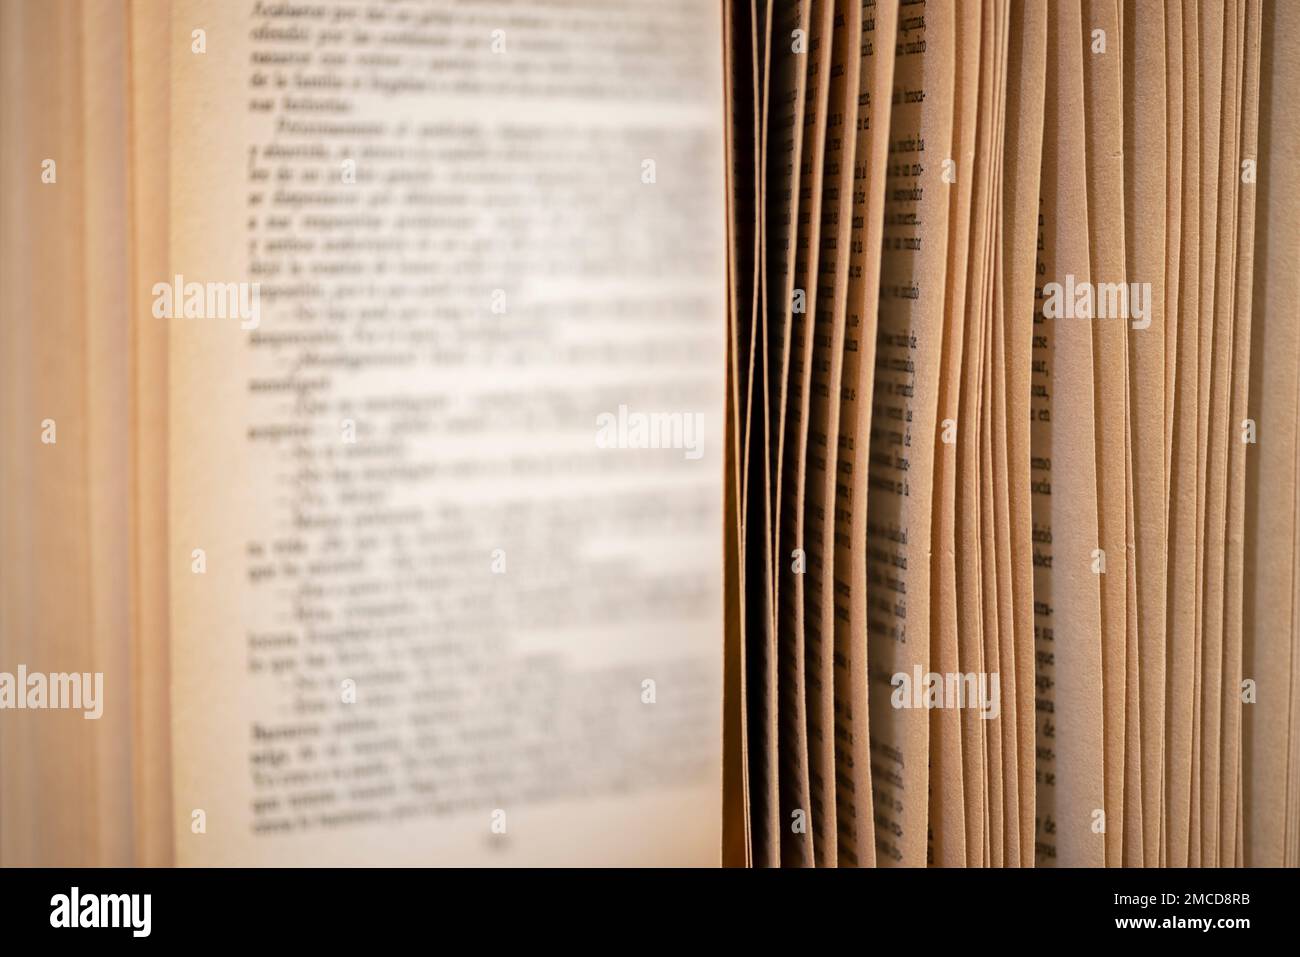 Detalle de un libro abierto con la escritura de las páginas desenfocada Stock Photo